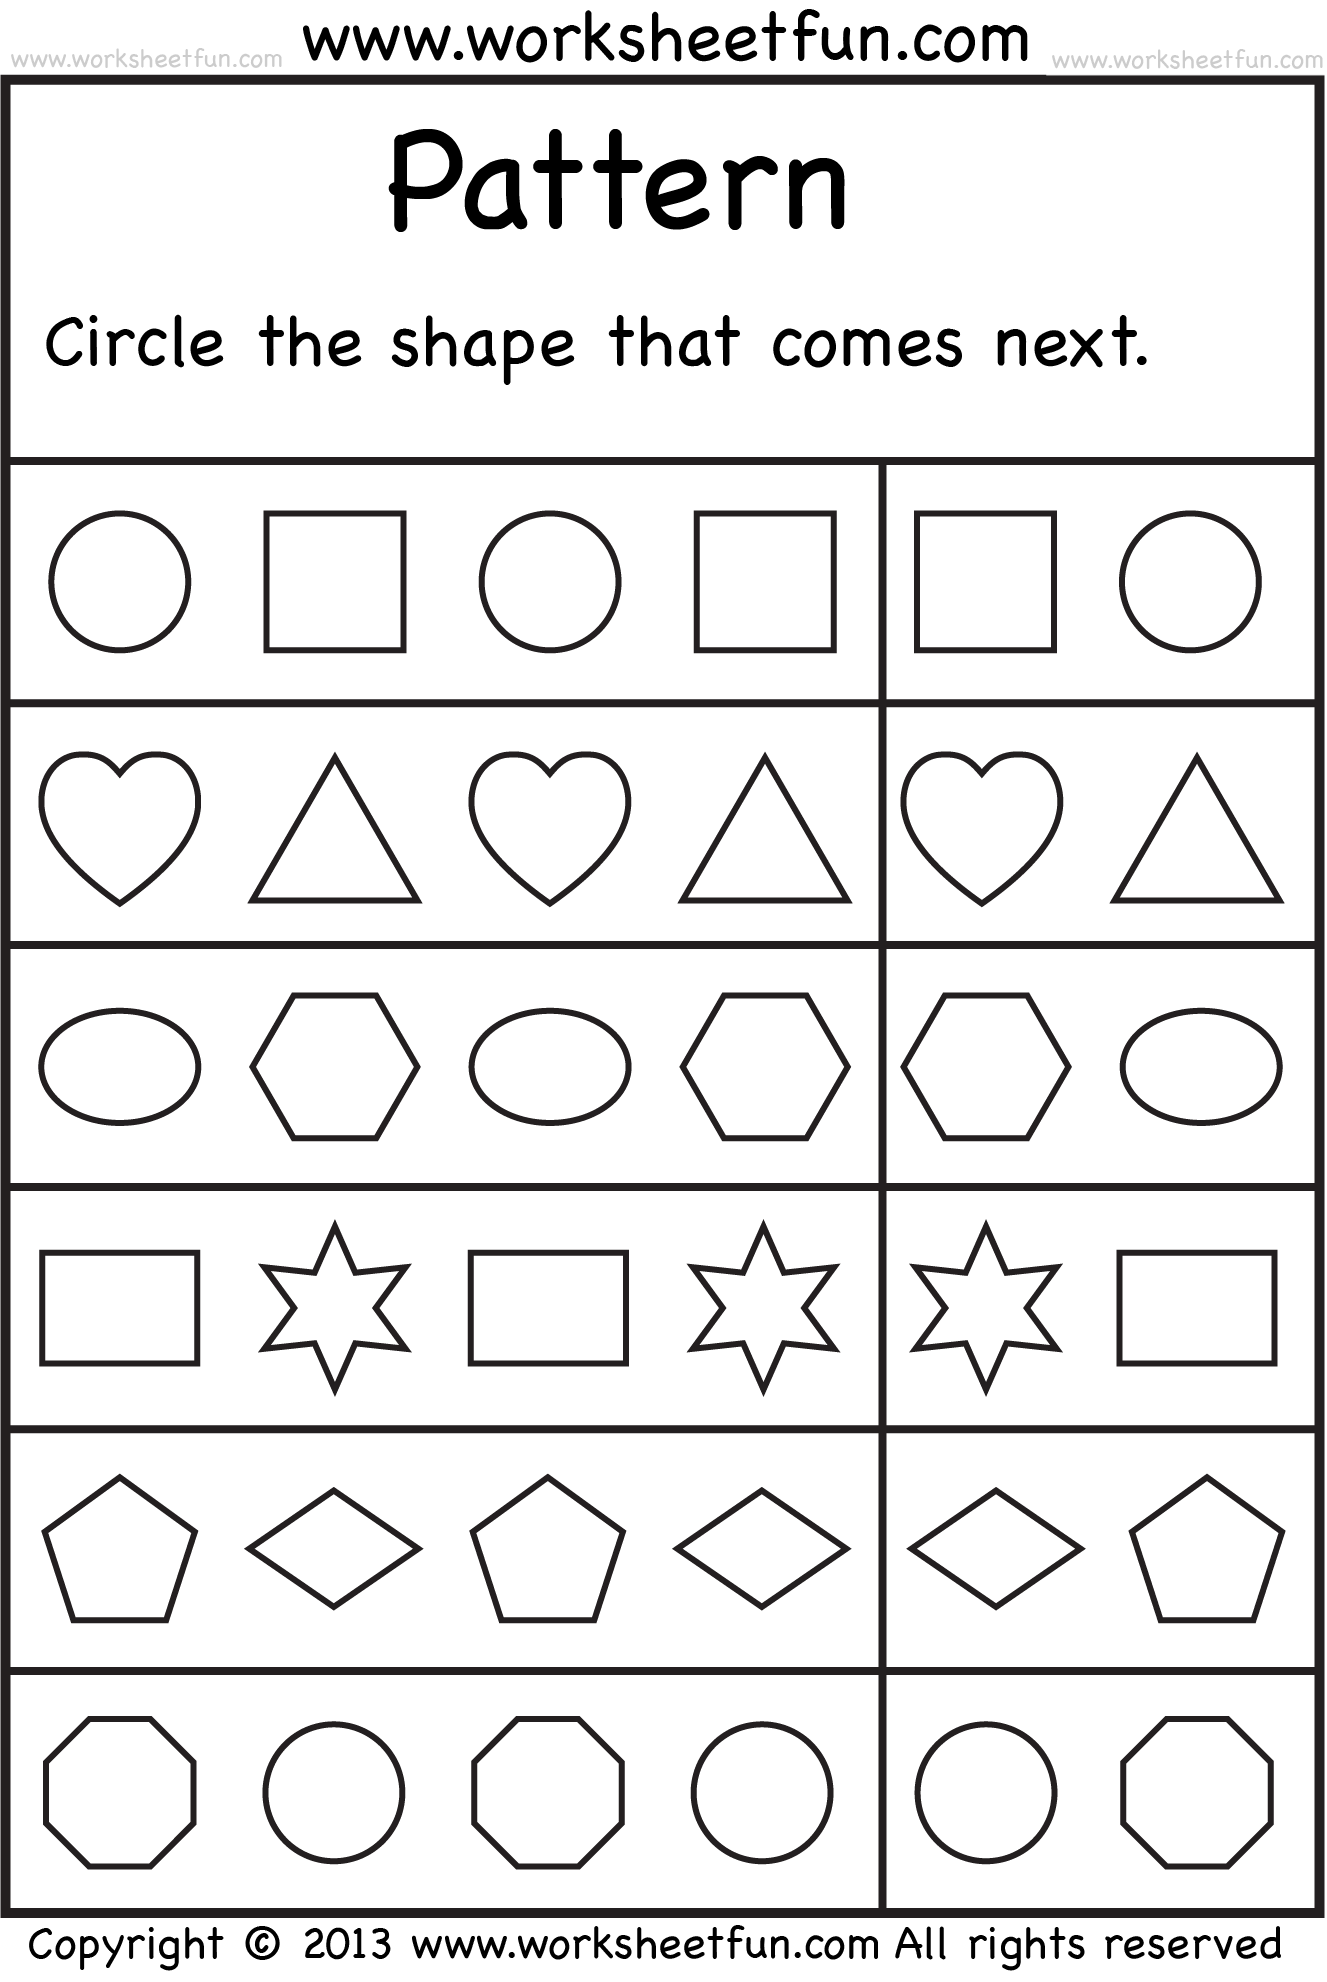 FREE Printable Worksheets Pattern worksheets for kindergarten